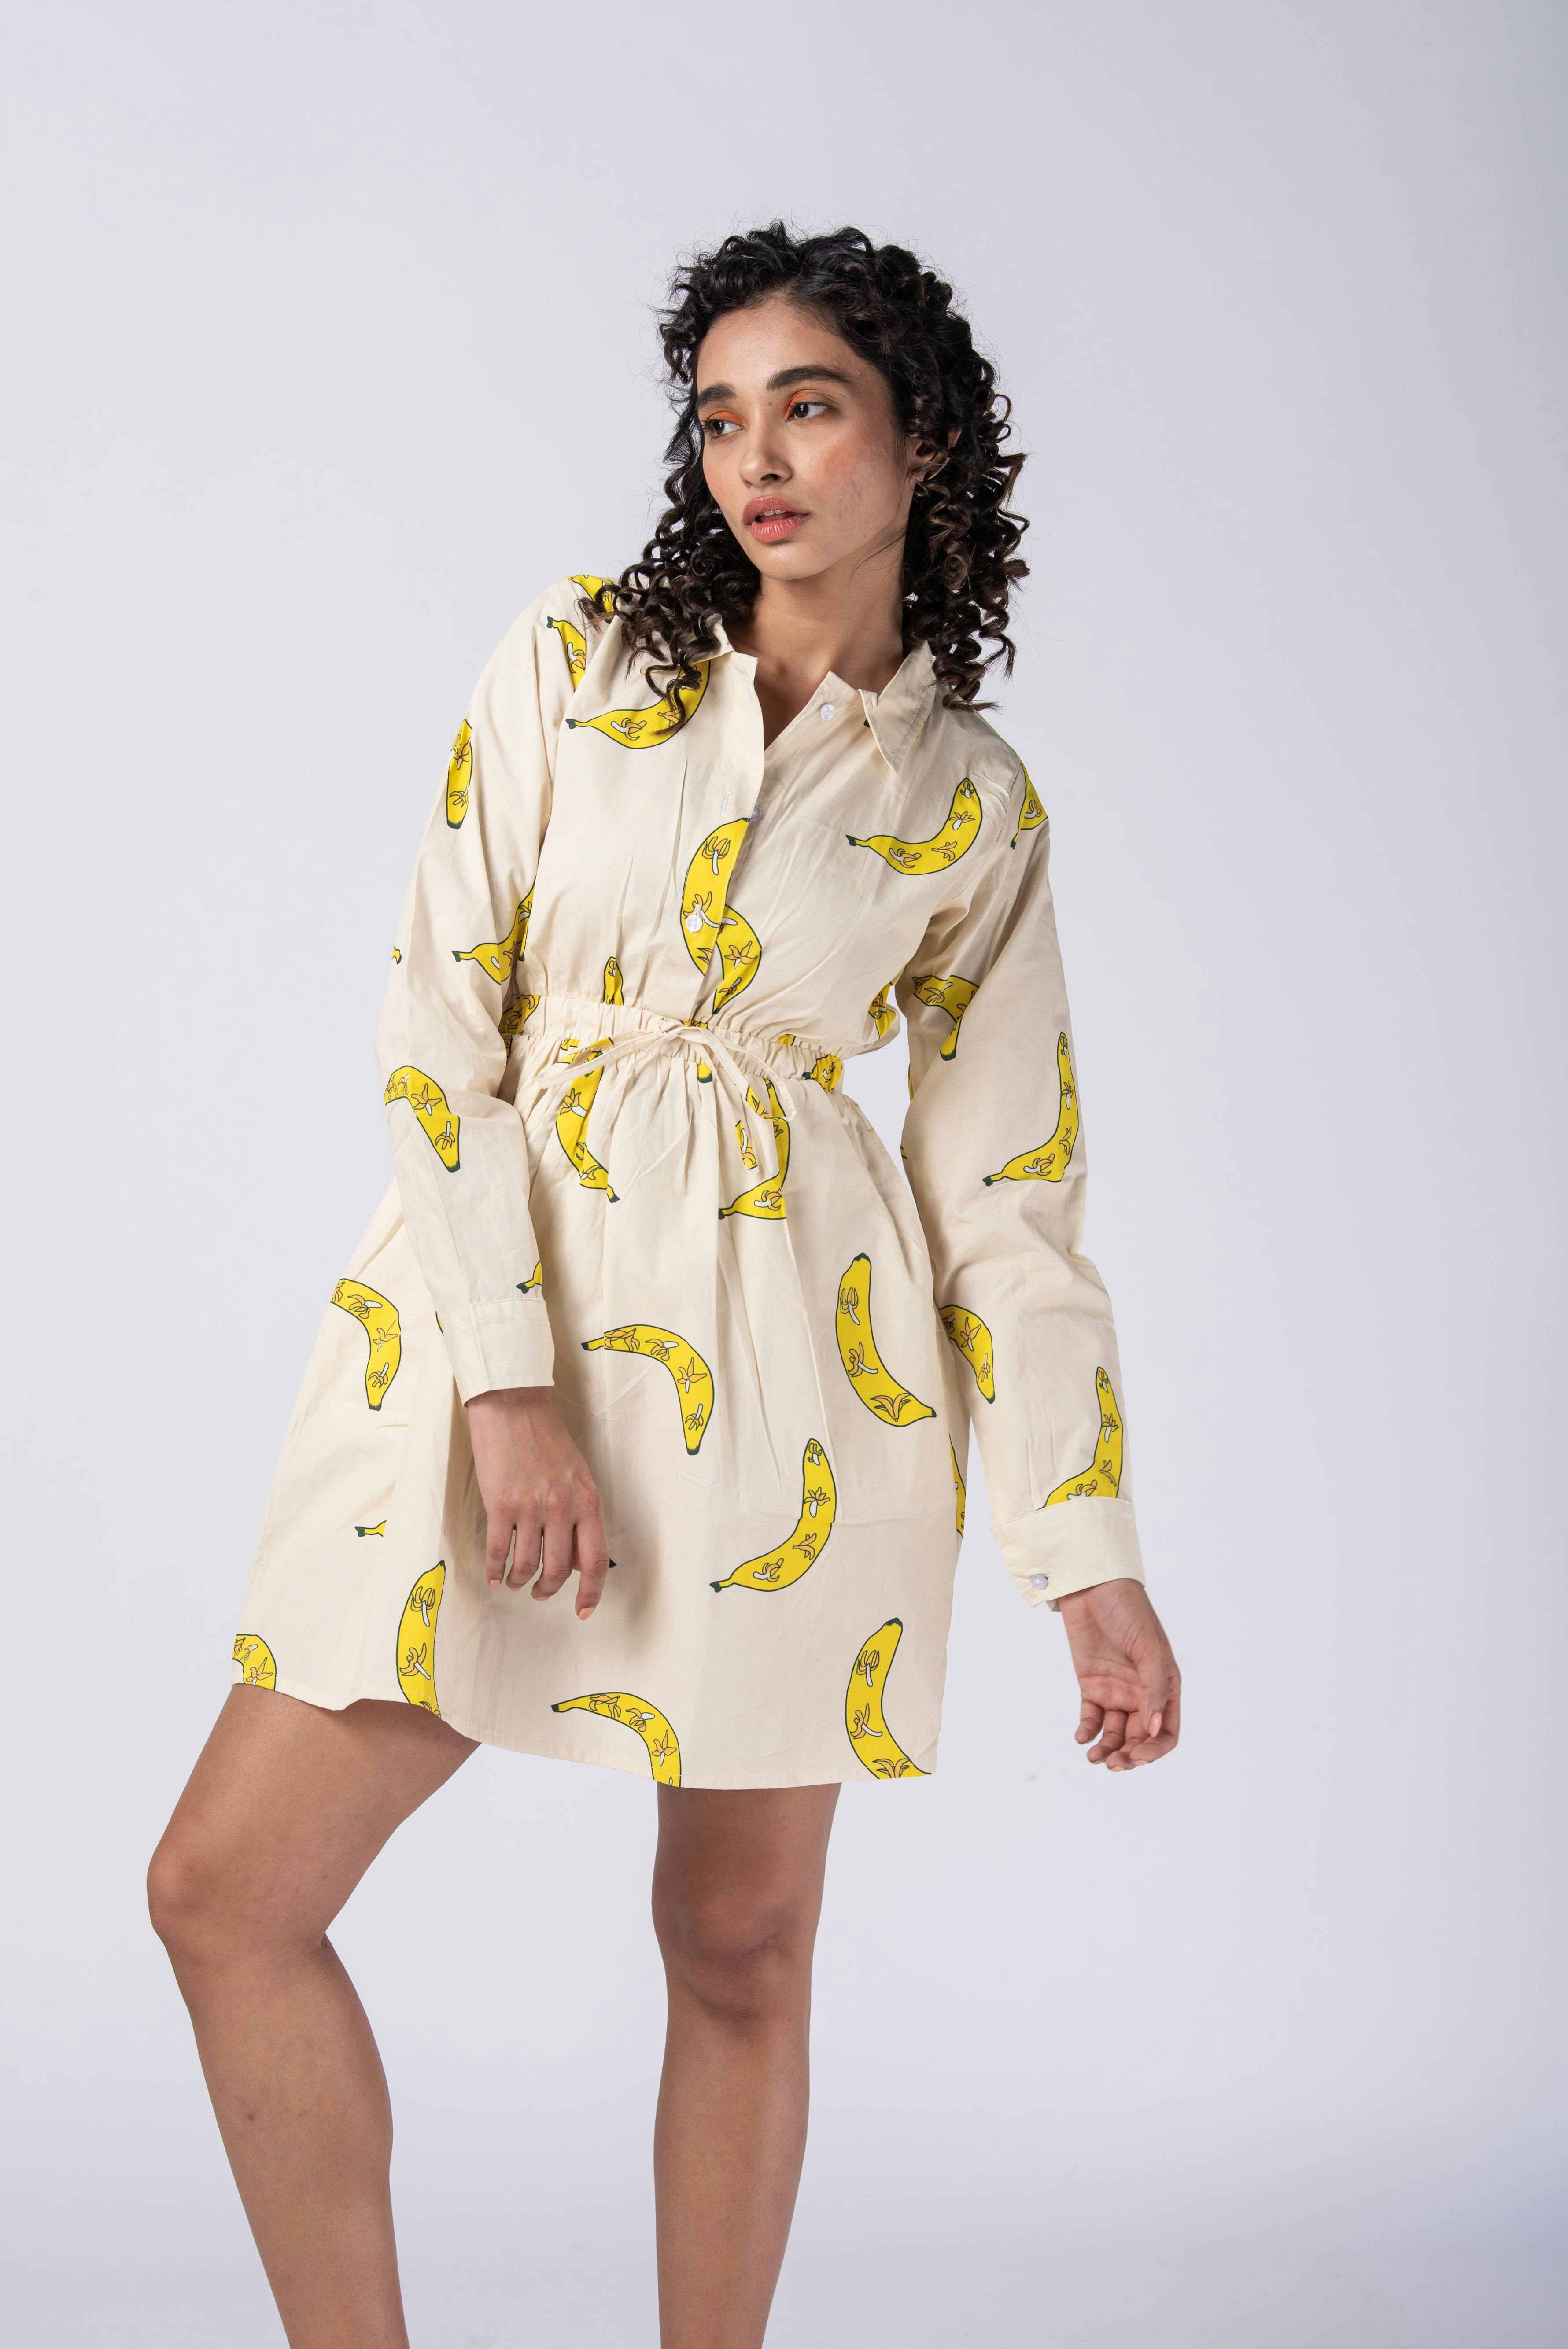 Banana short dress, a product by Radharaman